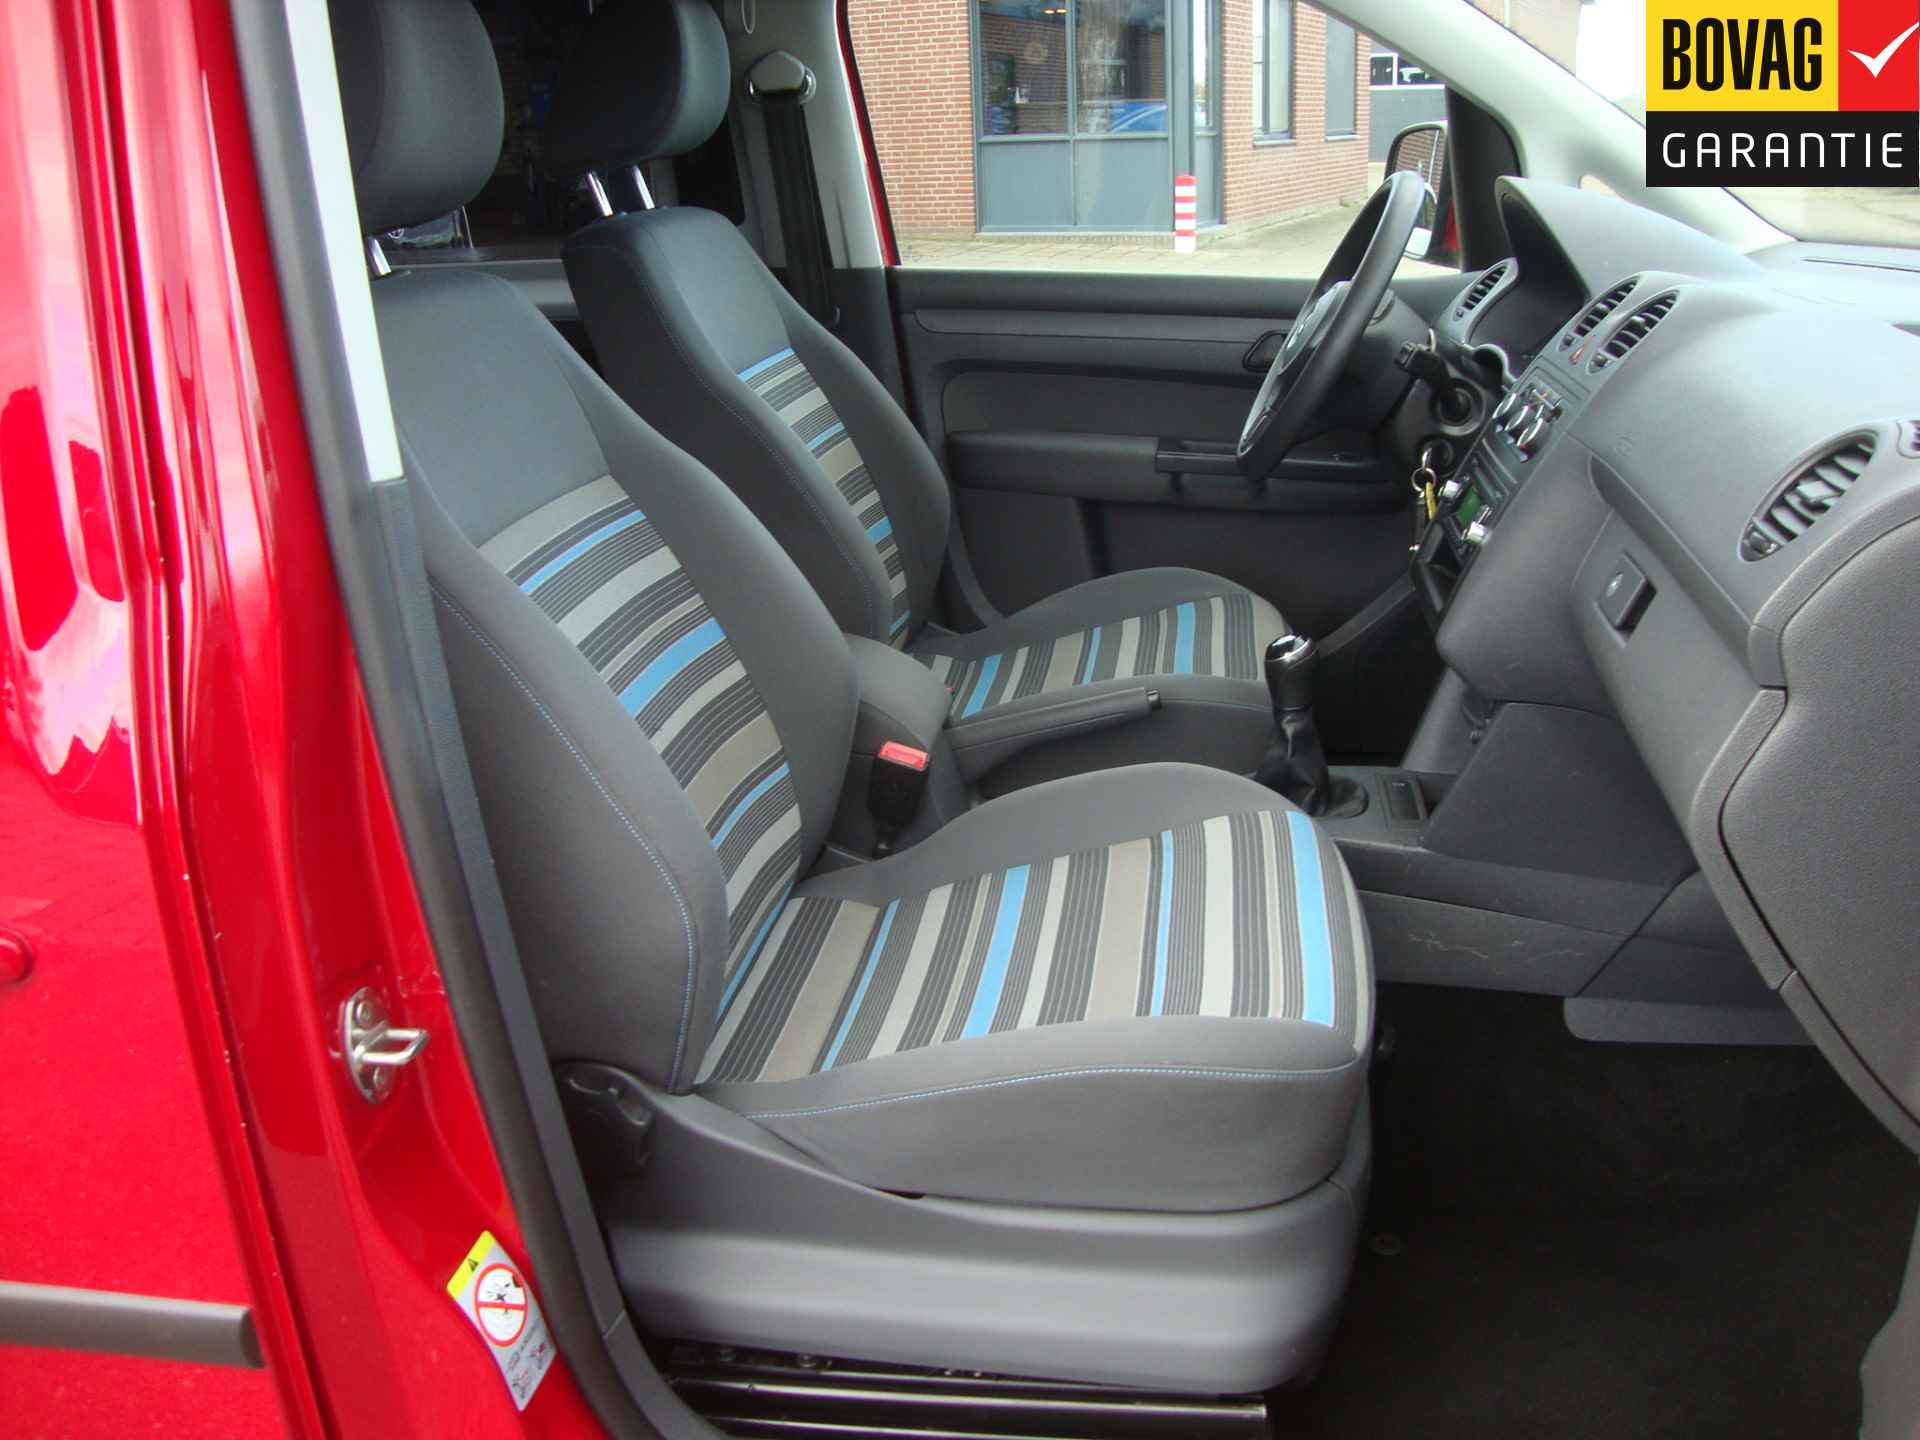 Volkswagen Caddy Maxi 1.2 TSI Trendline Rolstoel / Invalide , 5 pers + 1 rolstoelplaats( Airco,Cruise Control) RIJKLAARPRIJS! - 15/47